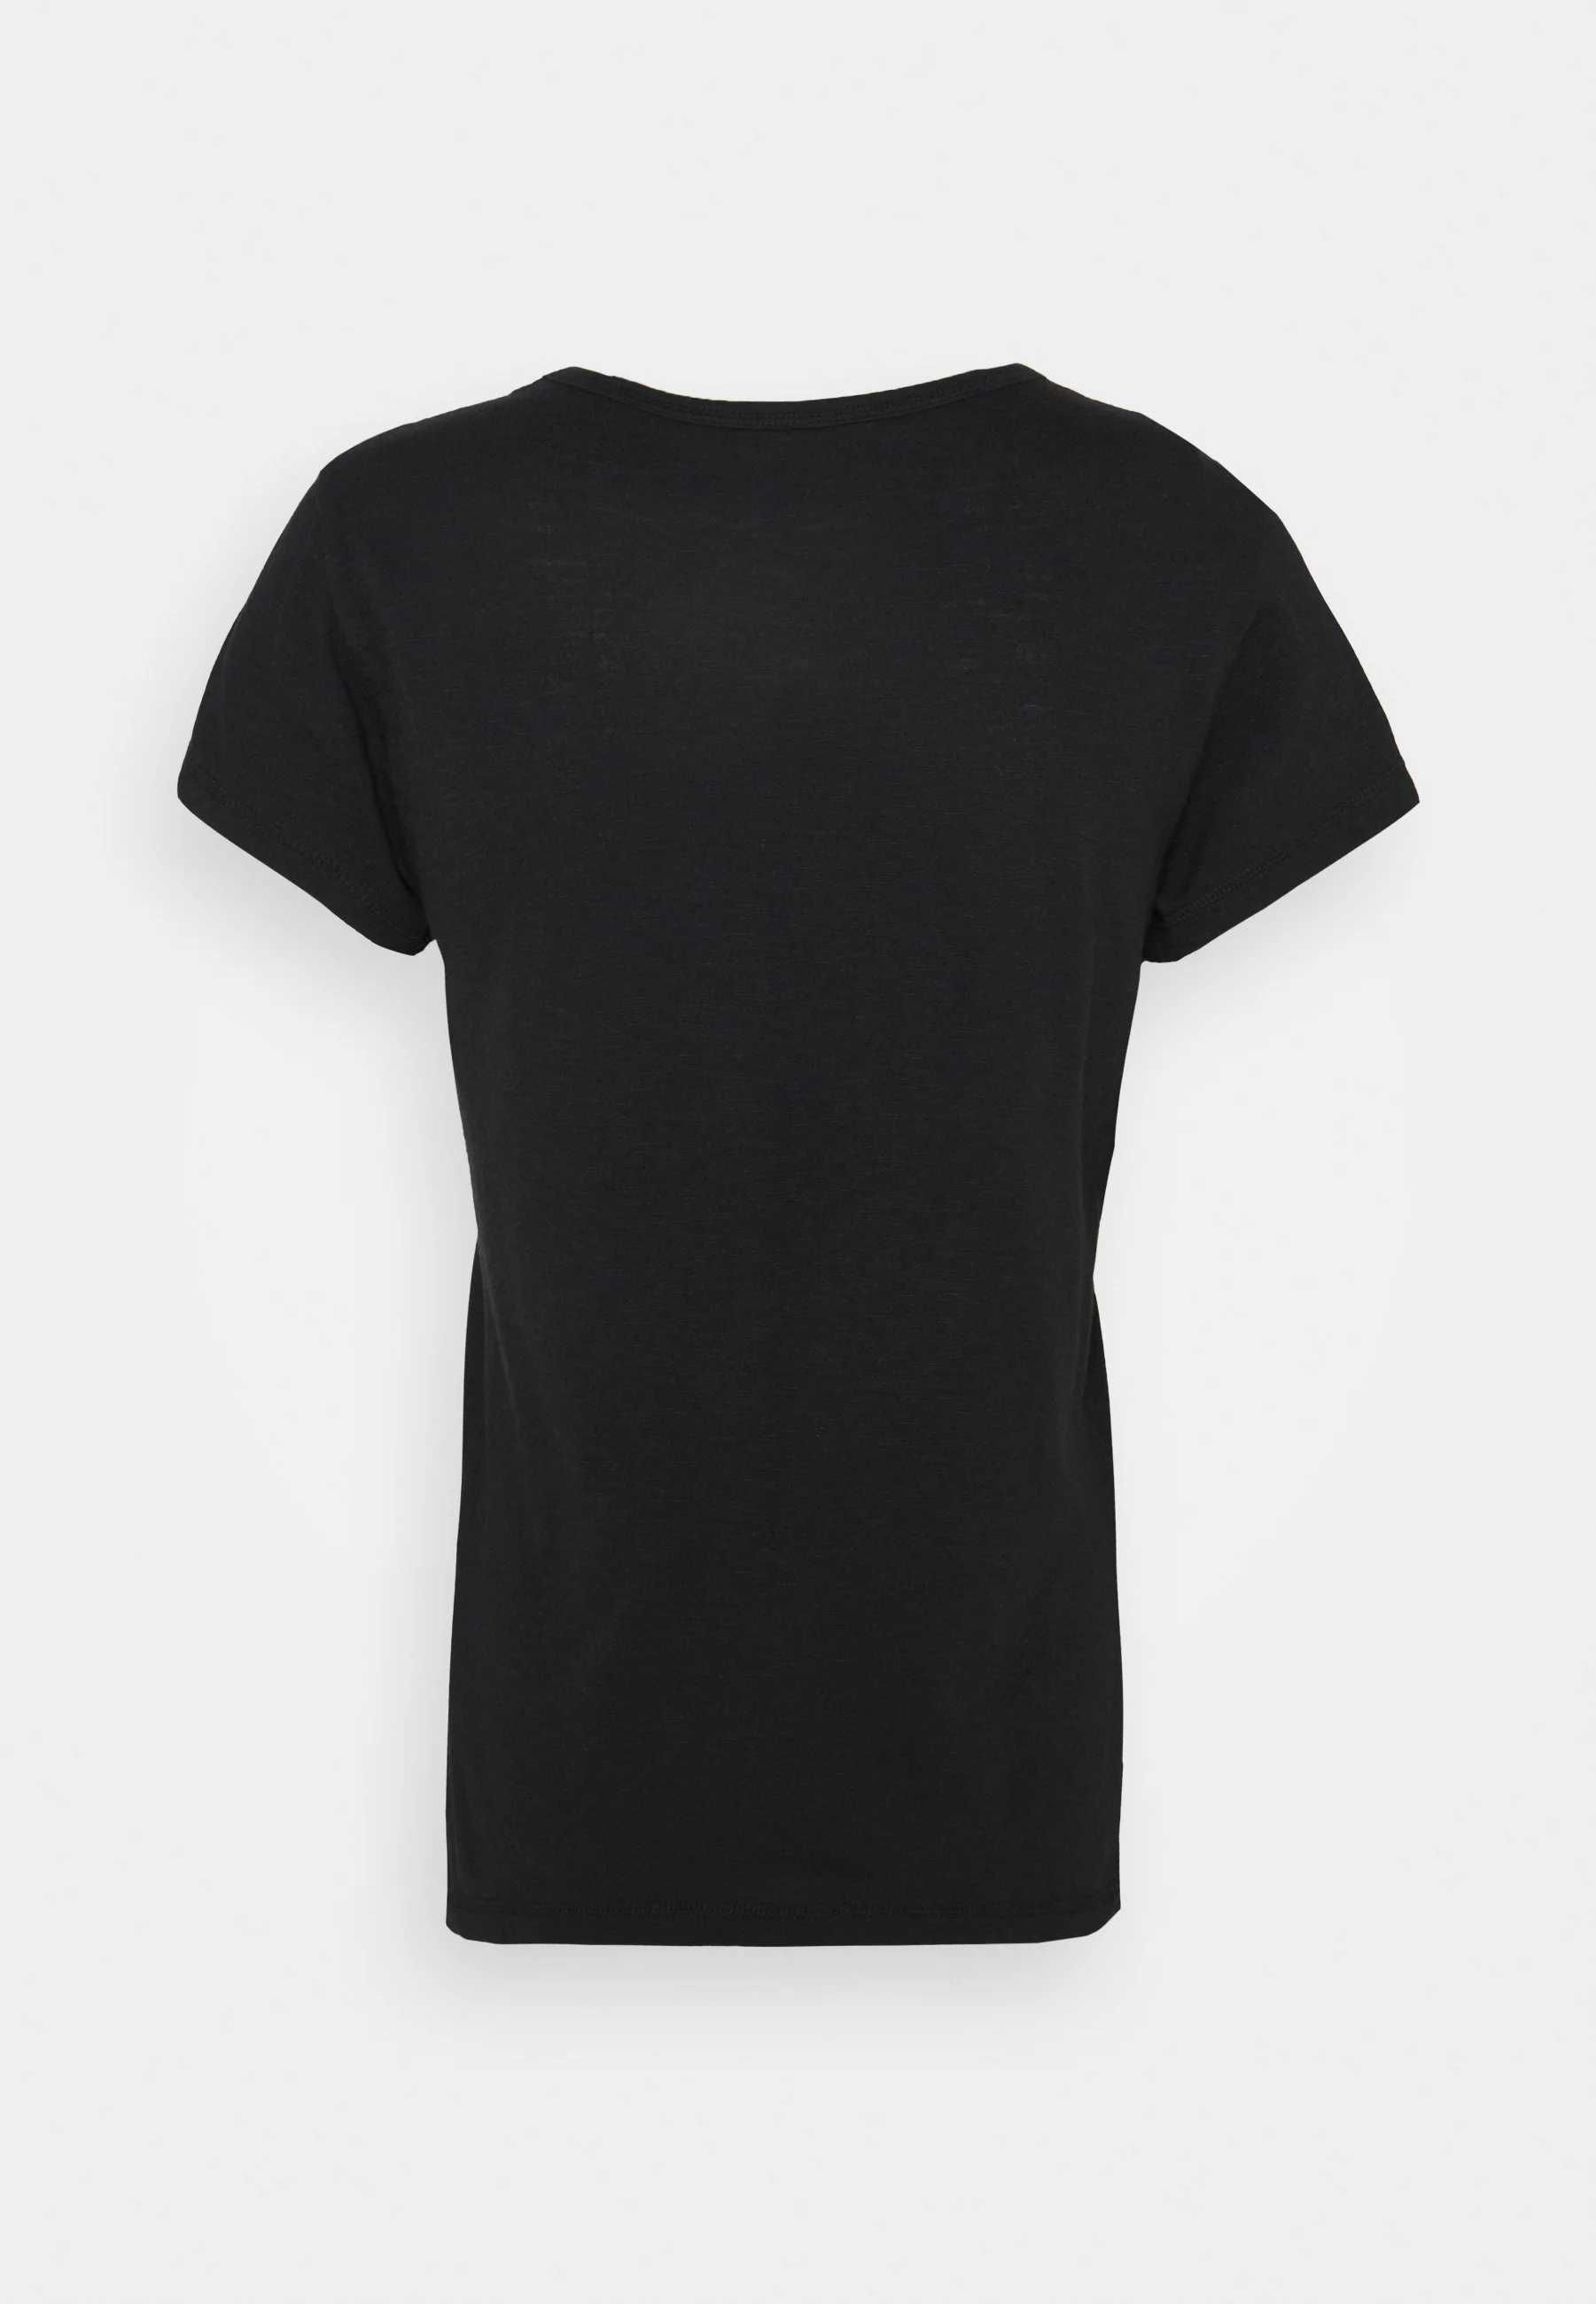 OKAZJA Oryginalny czarny T-shirt koszulka Abercrombie&Fitch sklep109zł